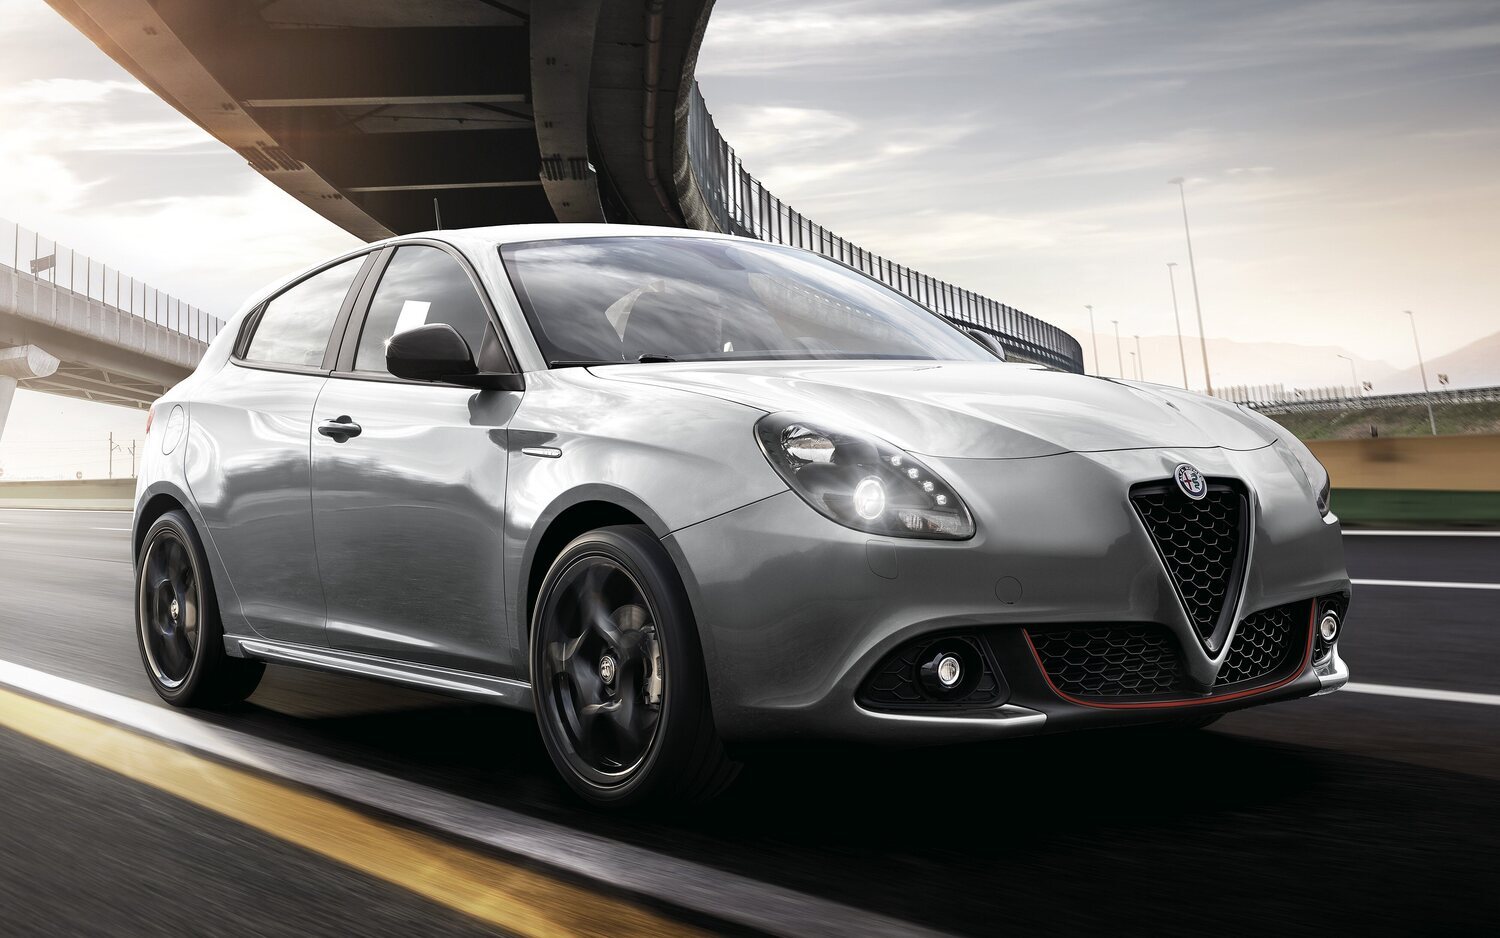 Alfa Romeo valoraría volver a los coches compactos eléctricos